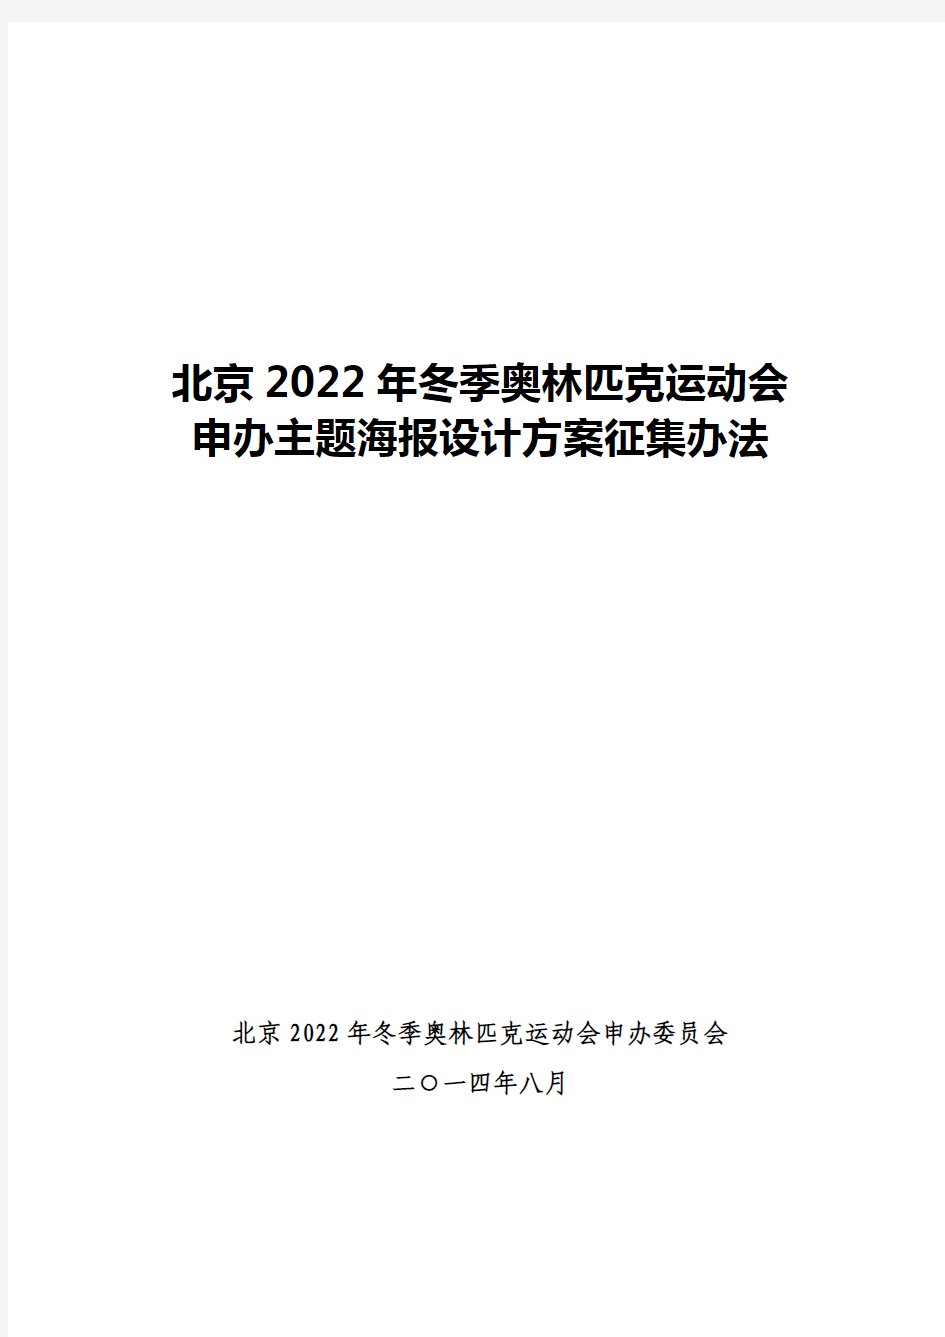 北京2022年冬季奥林匹克运动会申办主题海报设计方案征集办法